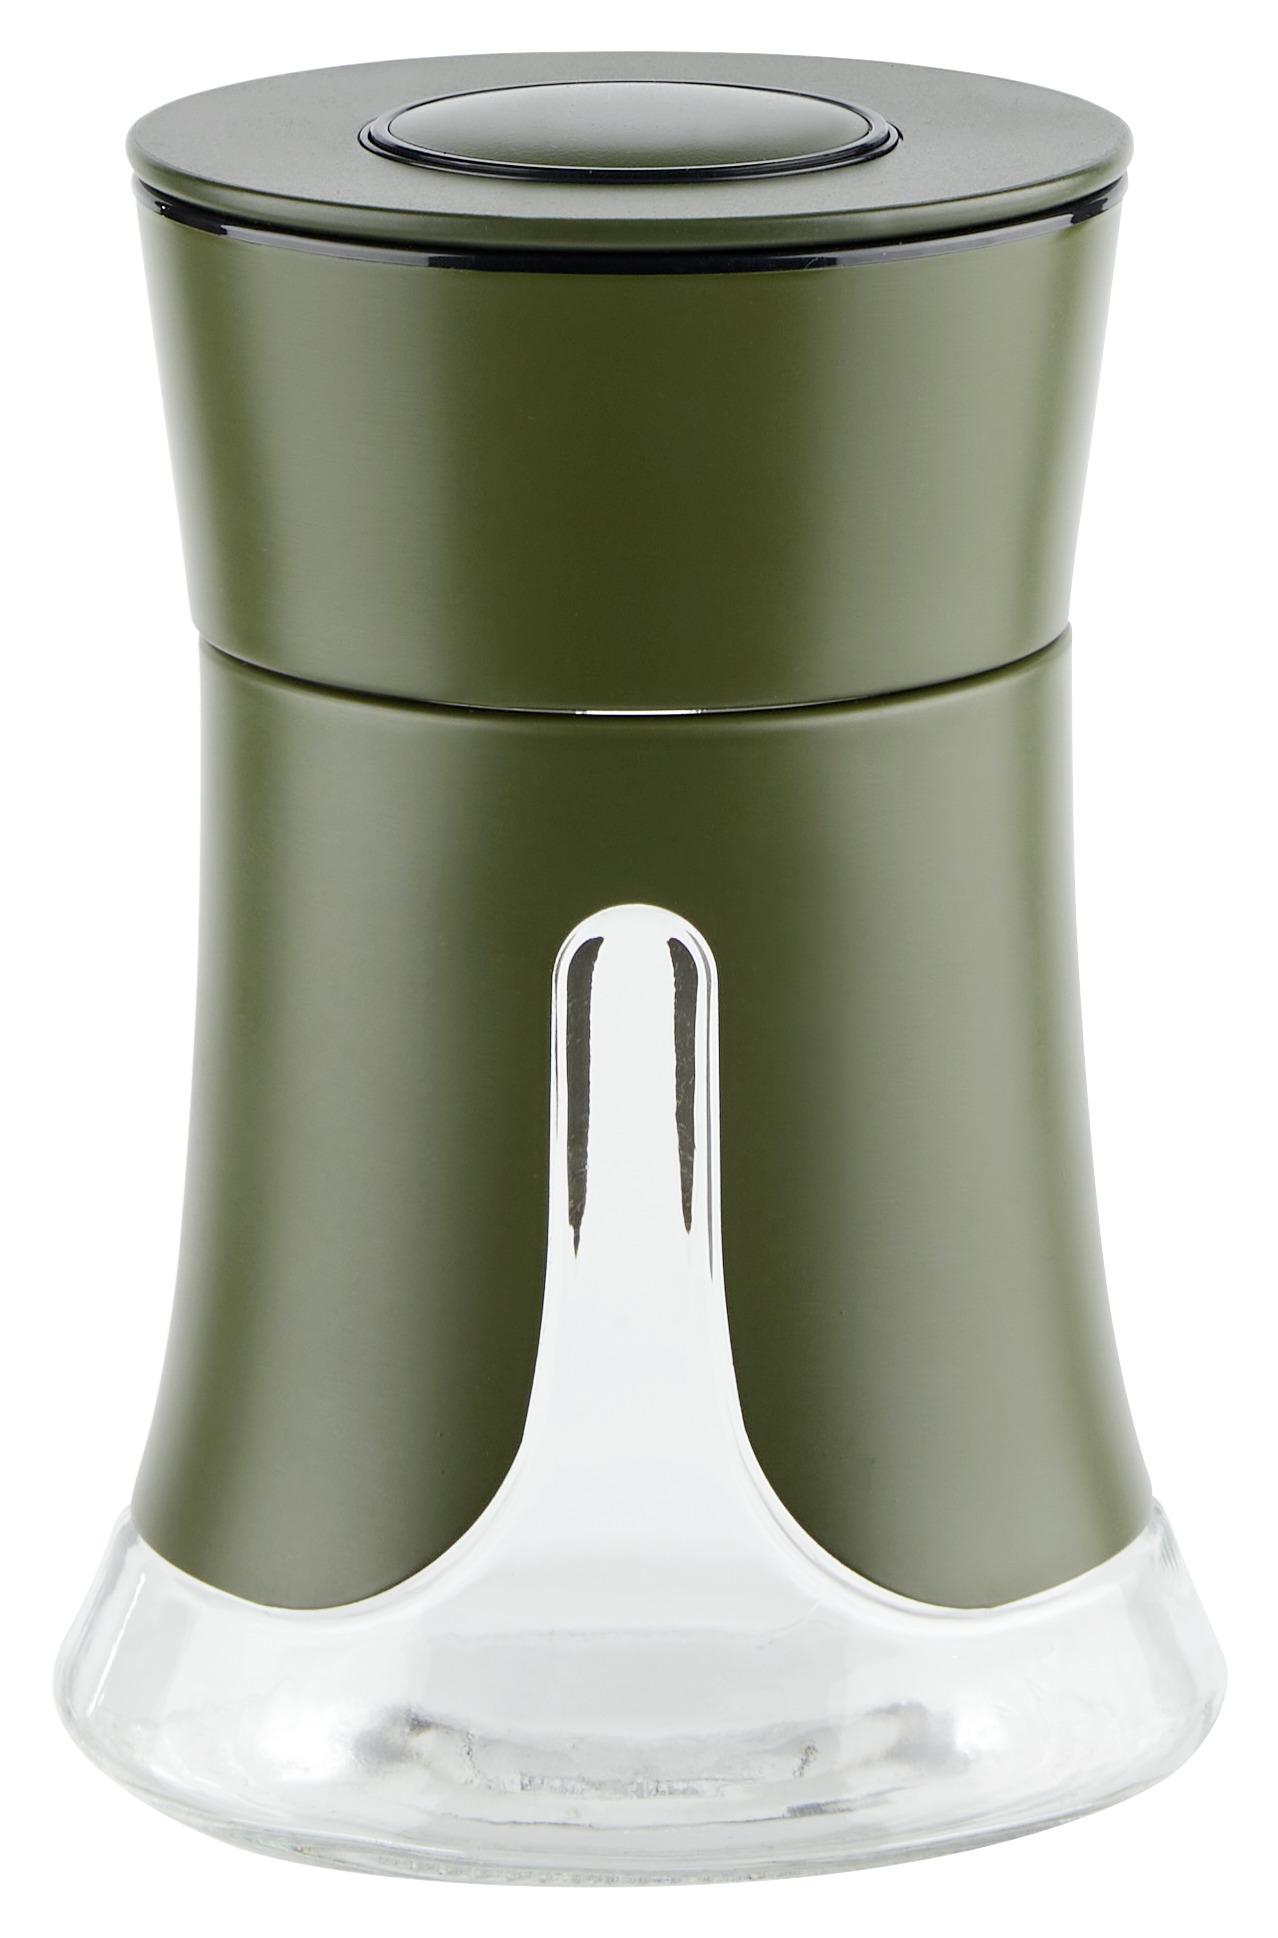 Dóza Na Potraviny Oil Green - S, 0,7 L - olivově zelená, Moderní, kov/plast (12/17,2cm) - Premium Living